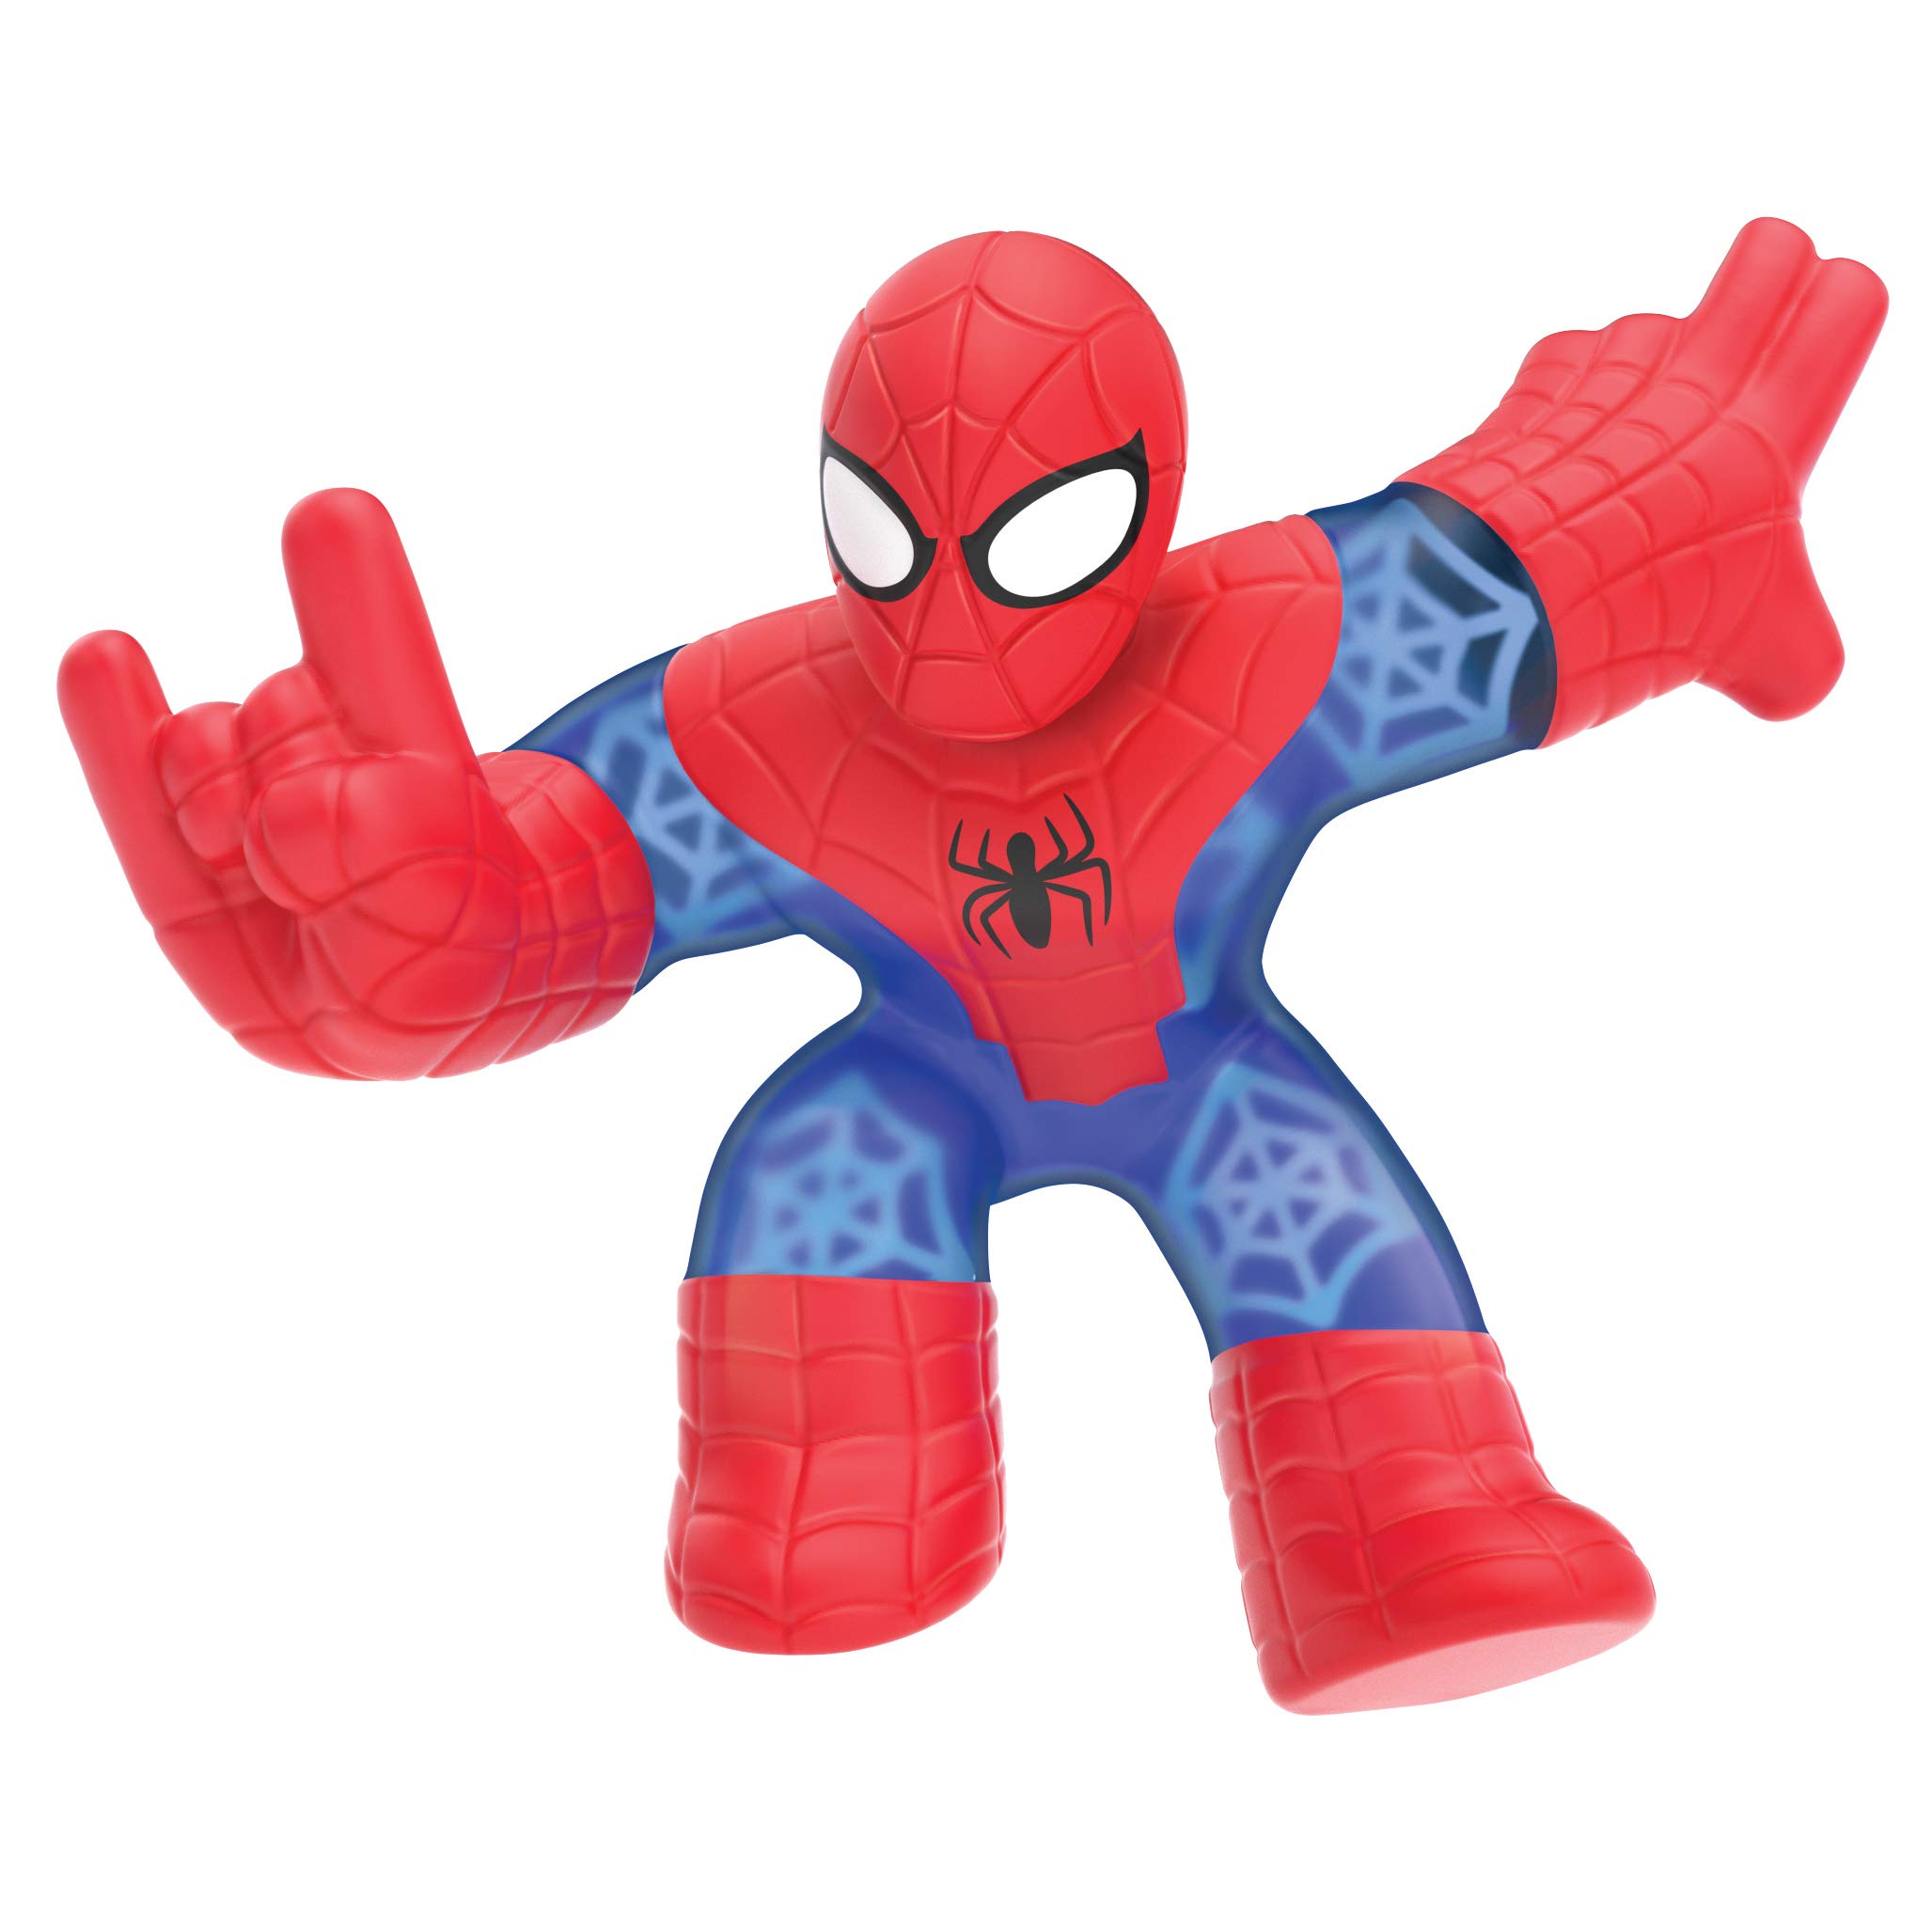 Spider-Man stretch toy